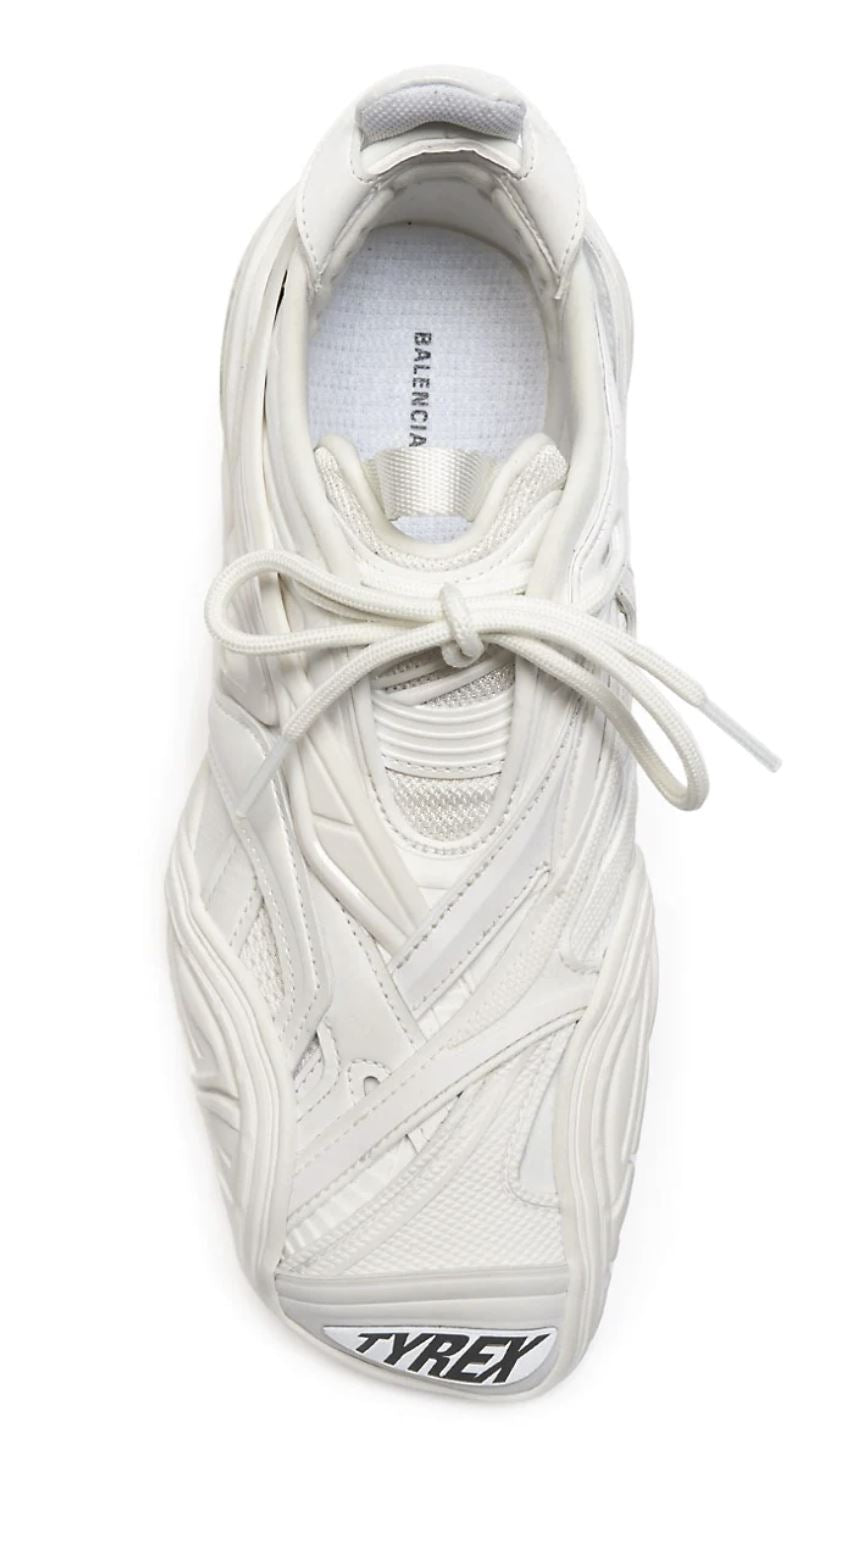 NIB Женские кроссовки Balenciaga Tyrex за 950 долларов США, белые, 9 Вт, США (39 Вт, евро) 